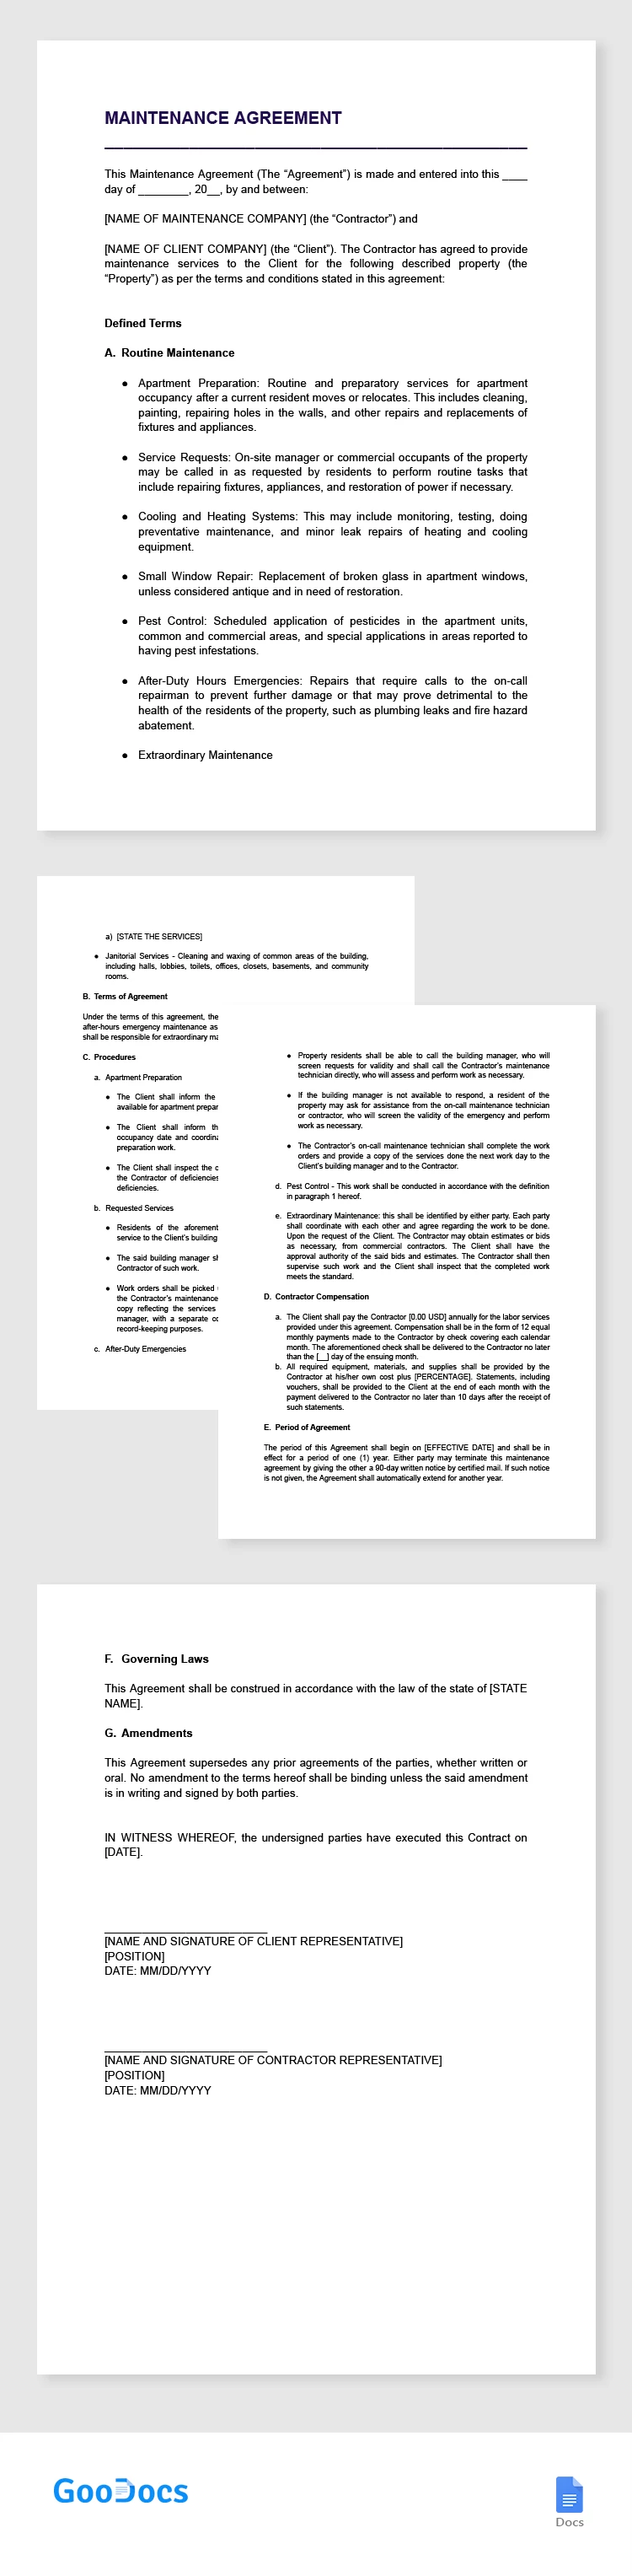 Acordo de Manutenção - free Google Docs Template - 10066306